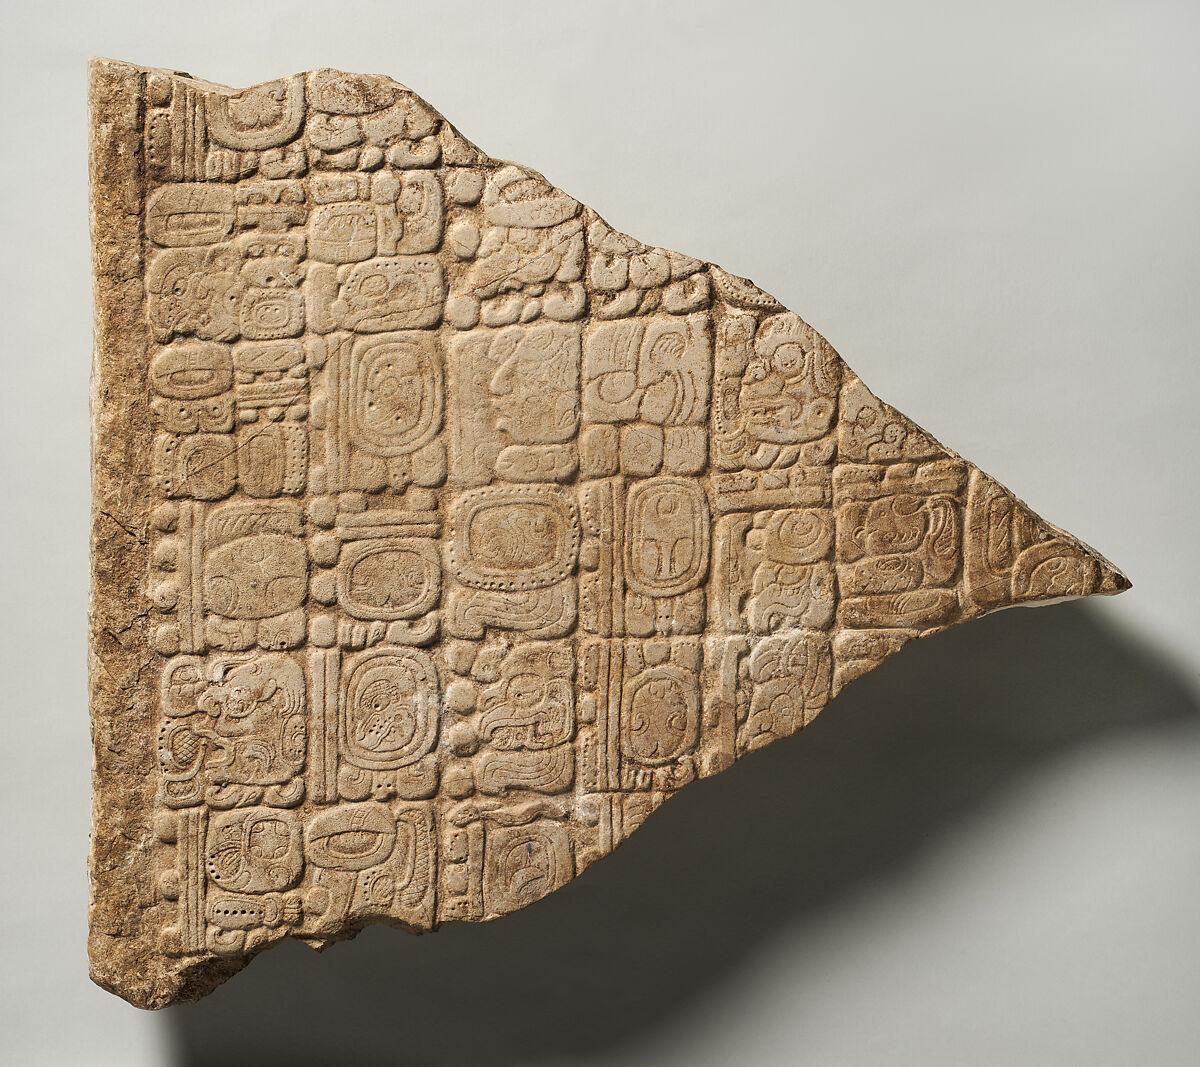 Stela Fragment with Glyphs, Stone, Maya 